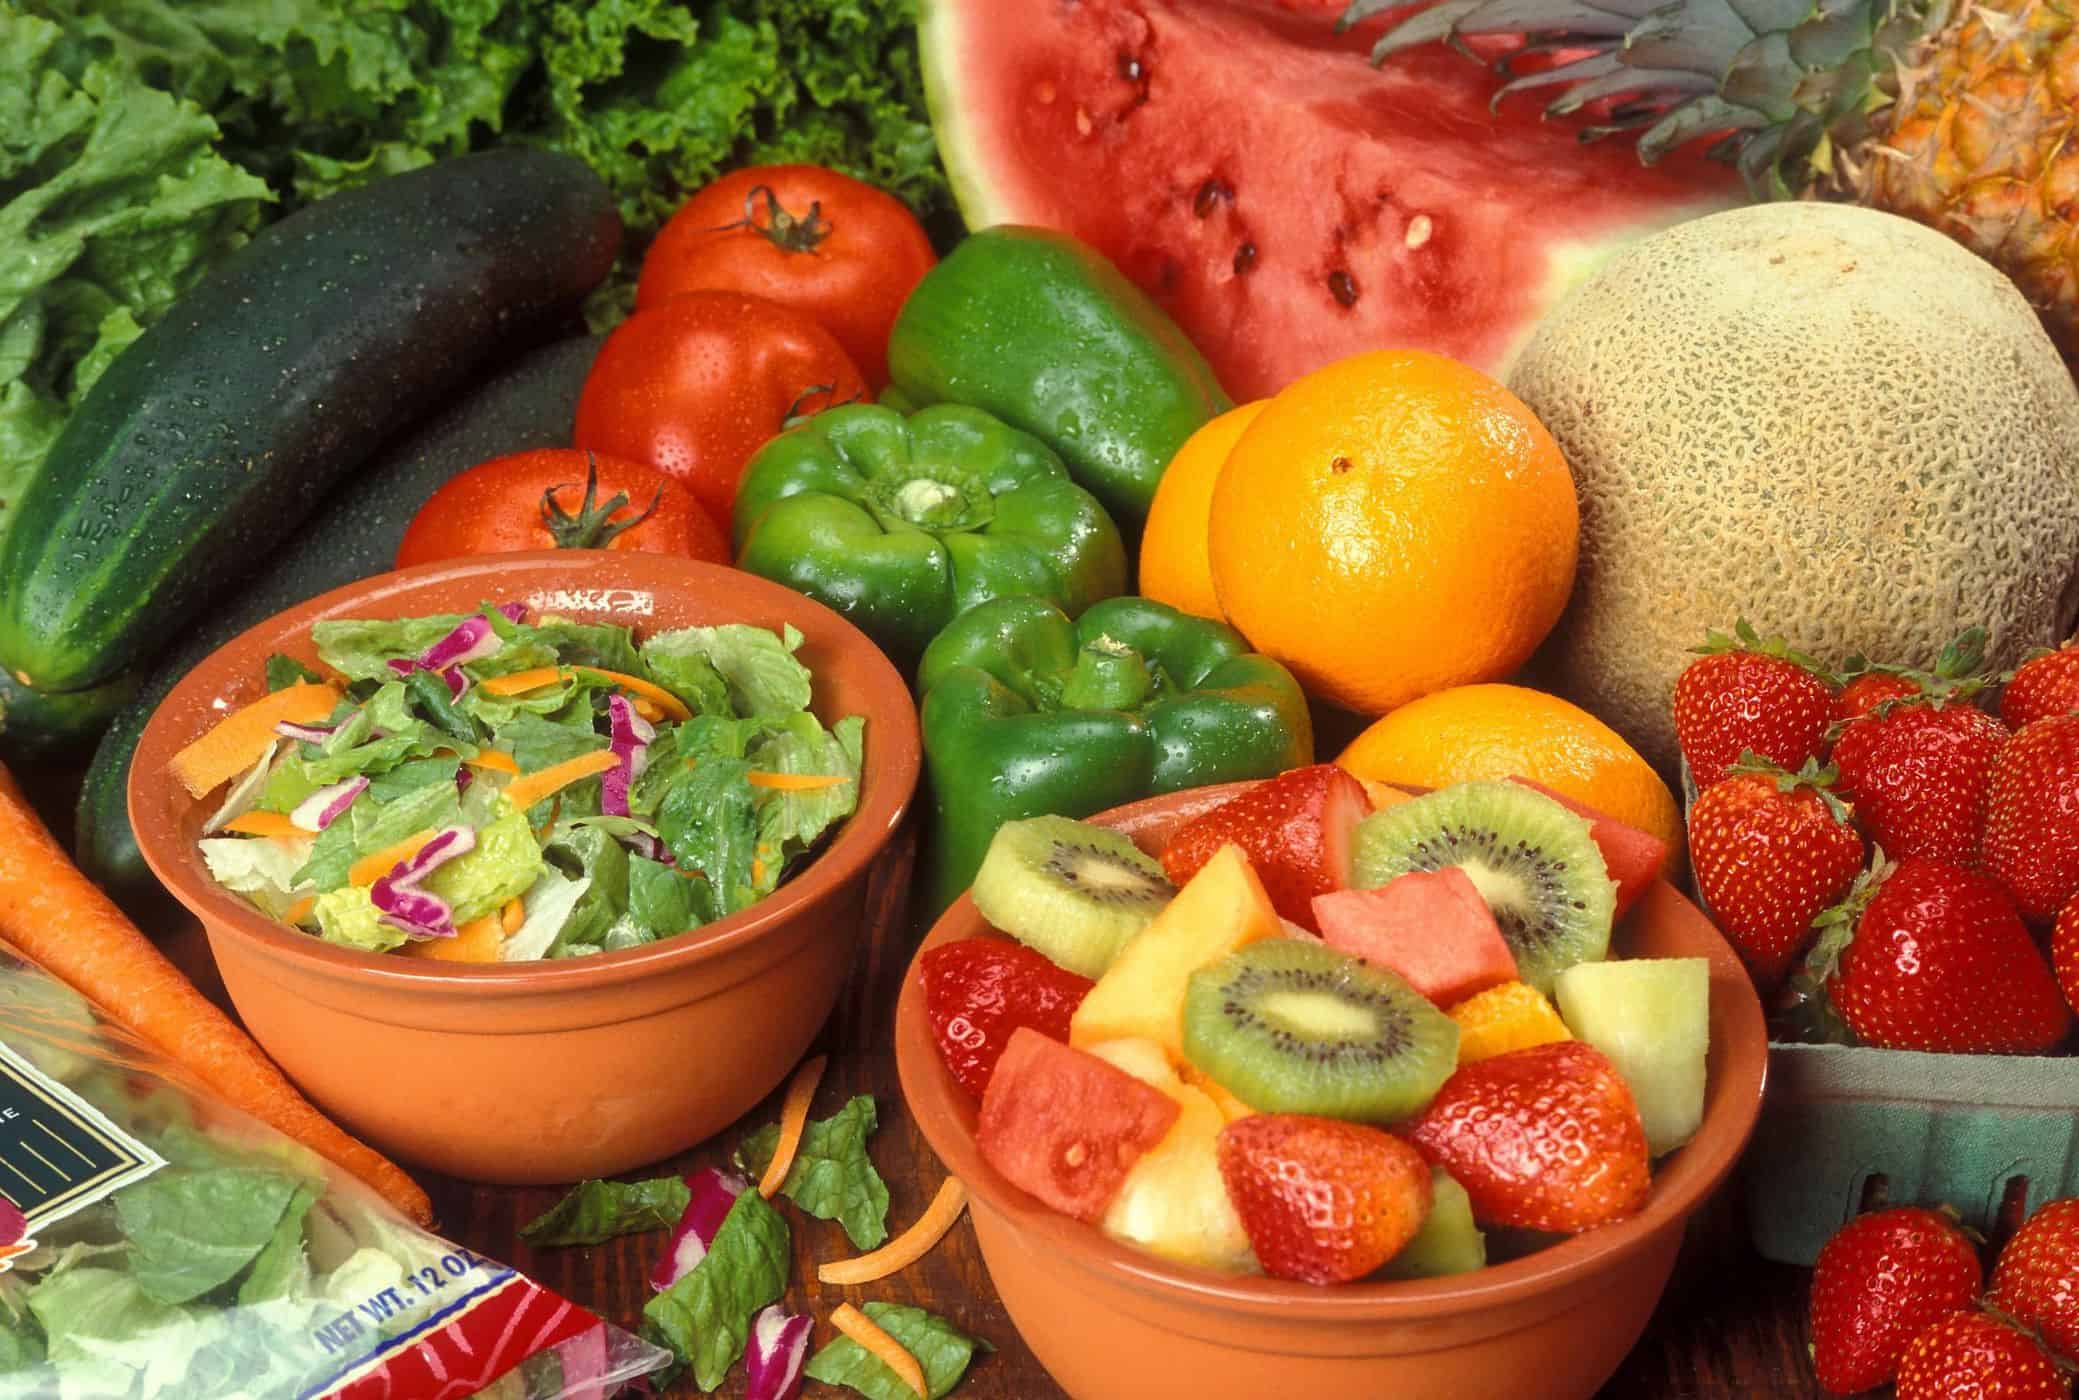 الخضار والفواكه الطازجة مقابل الفواكه والخضروات المجمدة ، أيهما أكثر تغذية؟